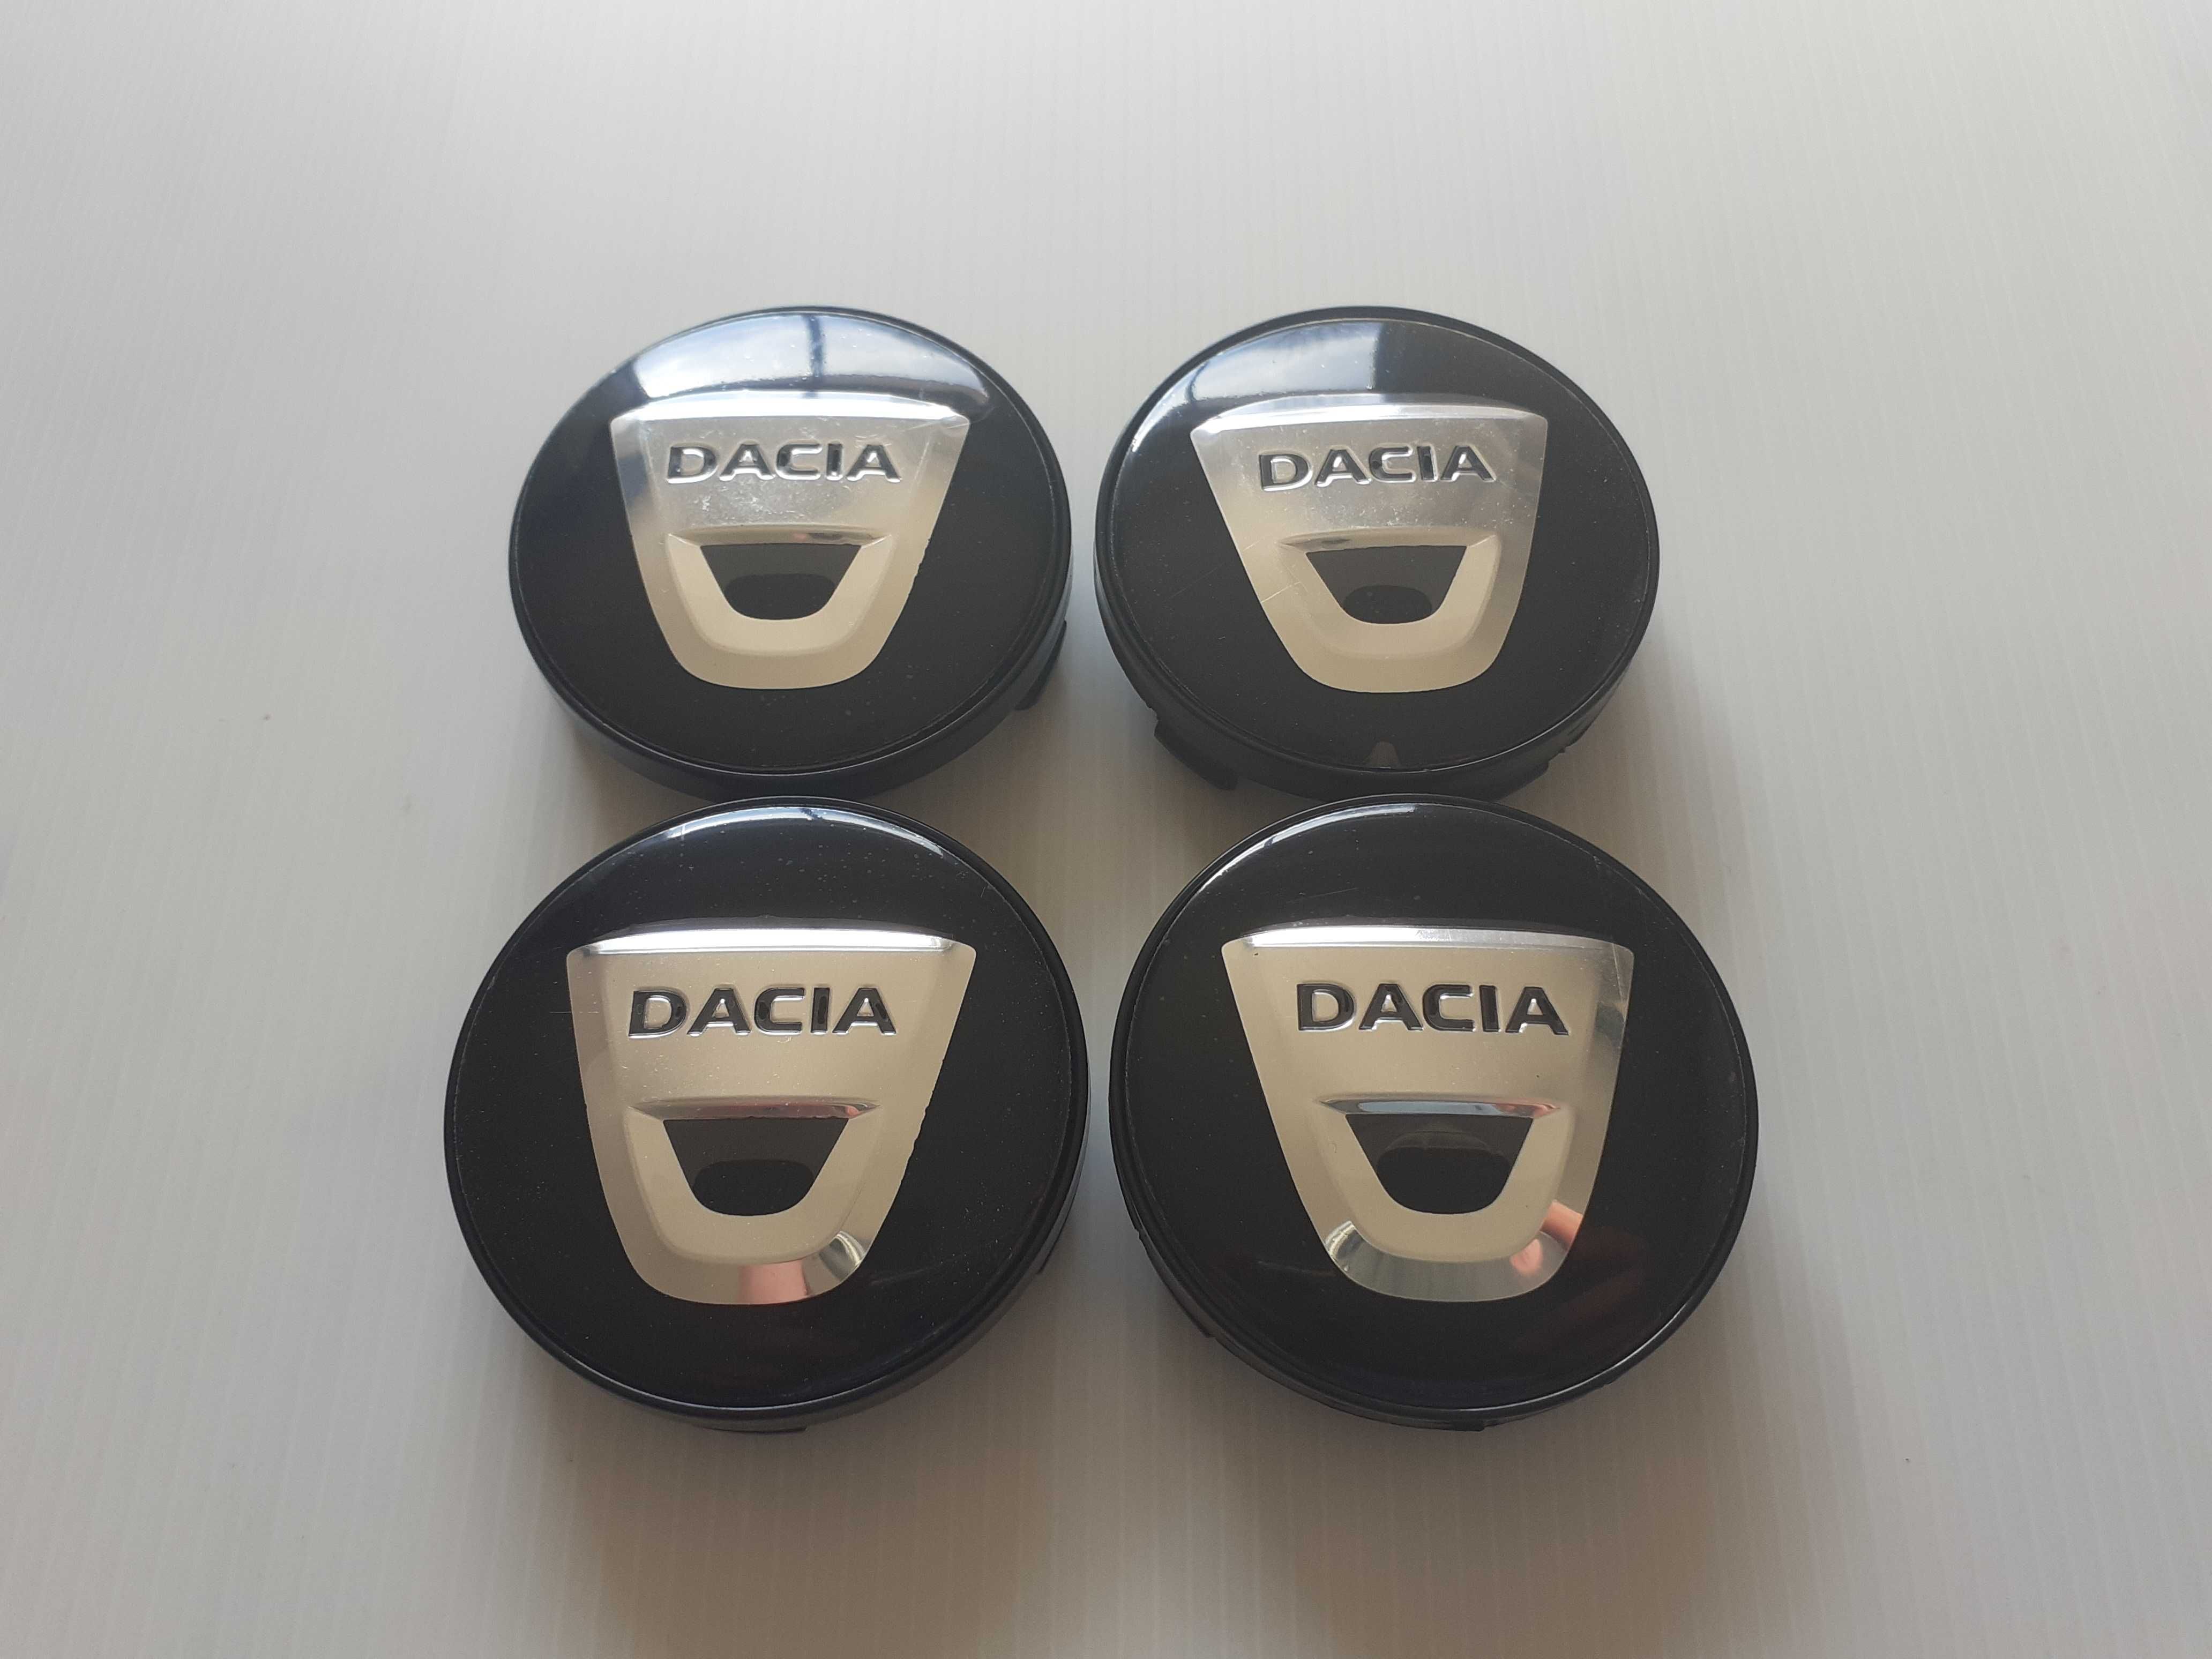 Centros/tampas de jante completos Dacia com 56 e 60 mm